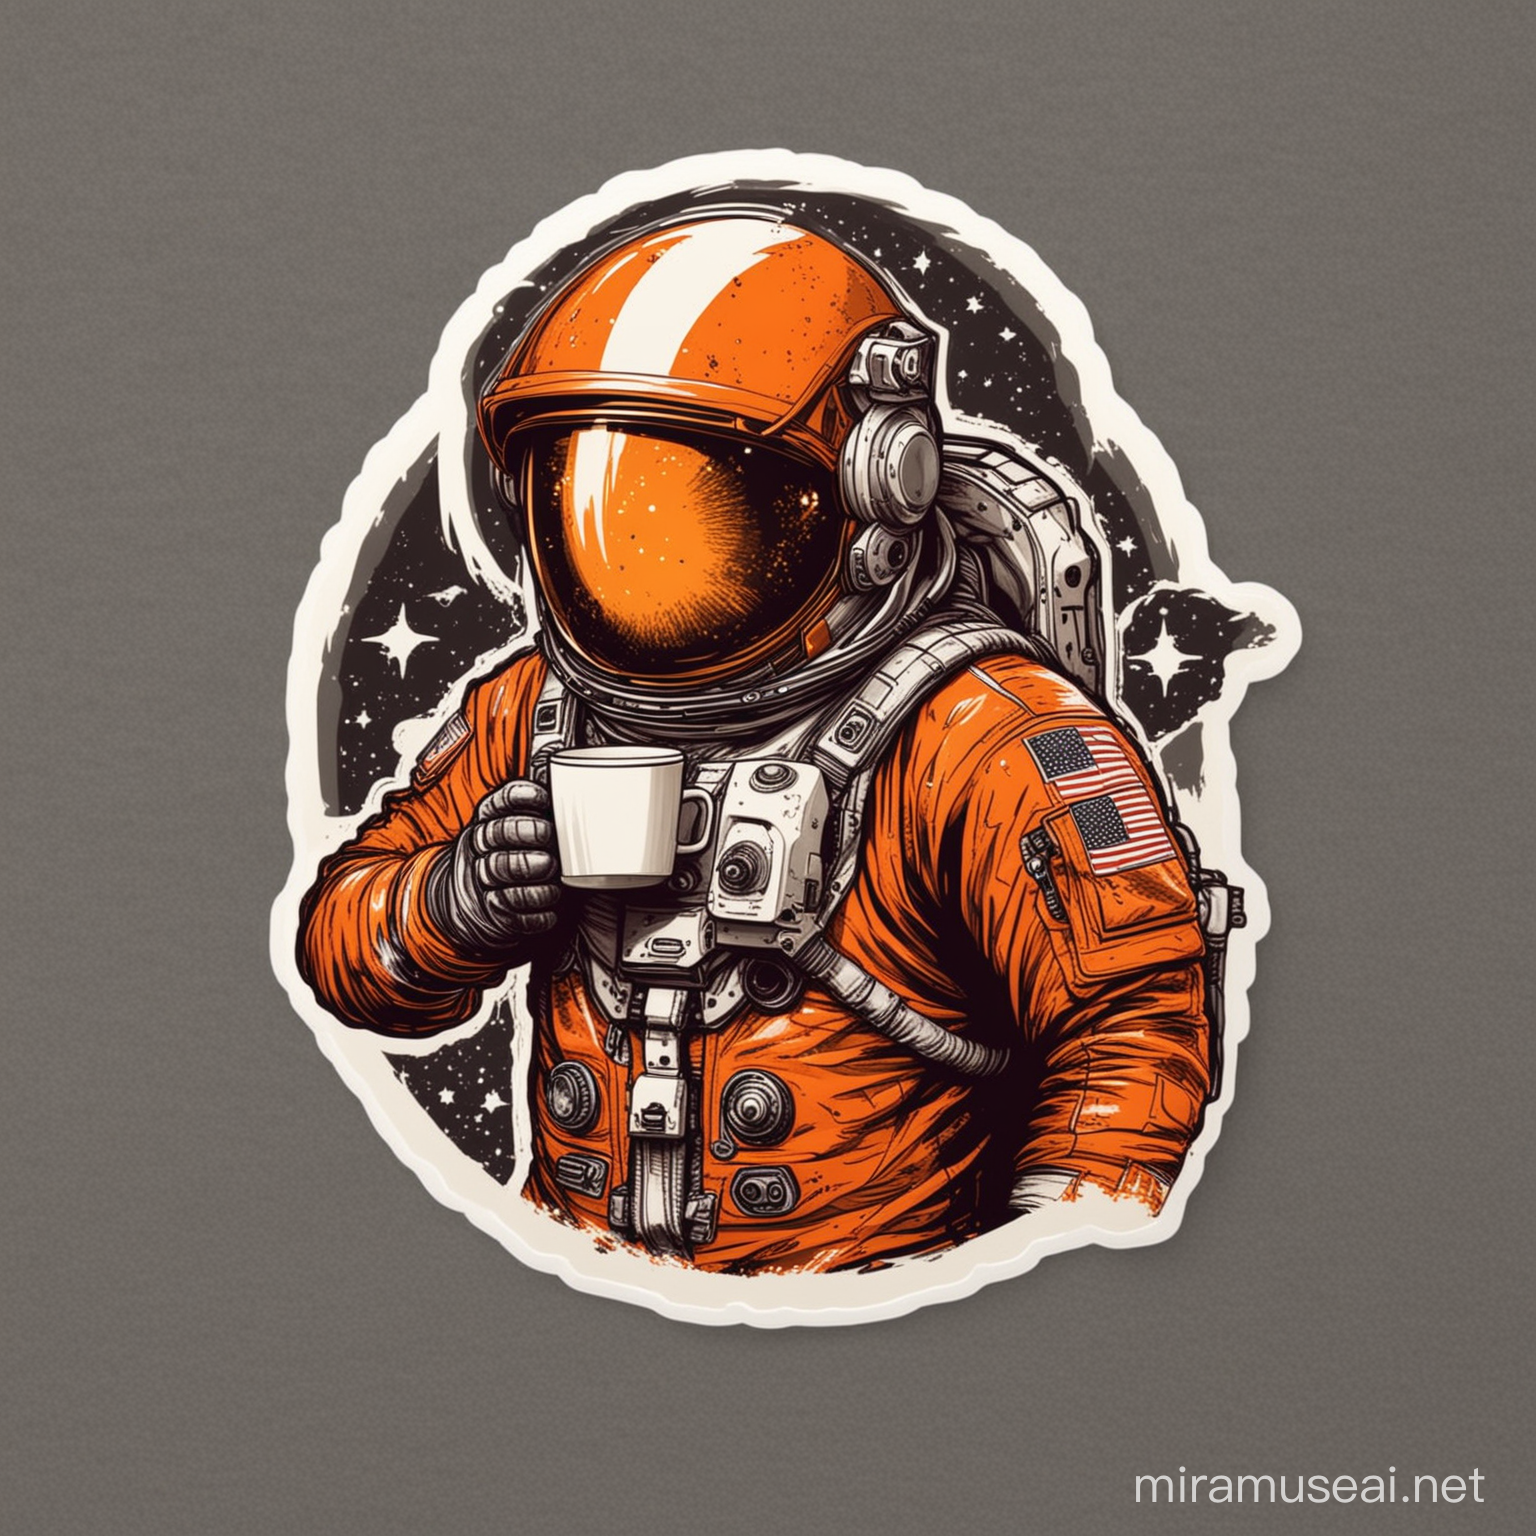 космонавт в скафандре с закрытым шлемом и кружкой кофе в руках в оранжевых тонах дизайн стикер